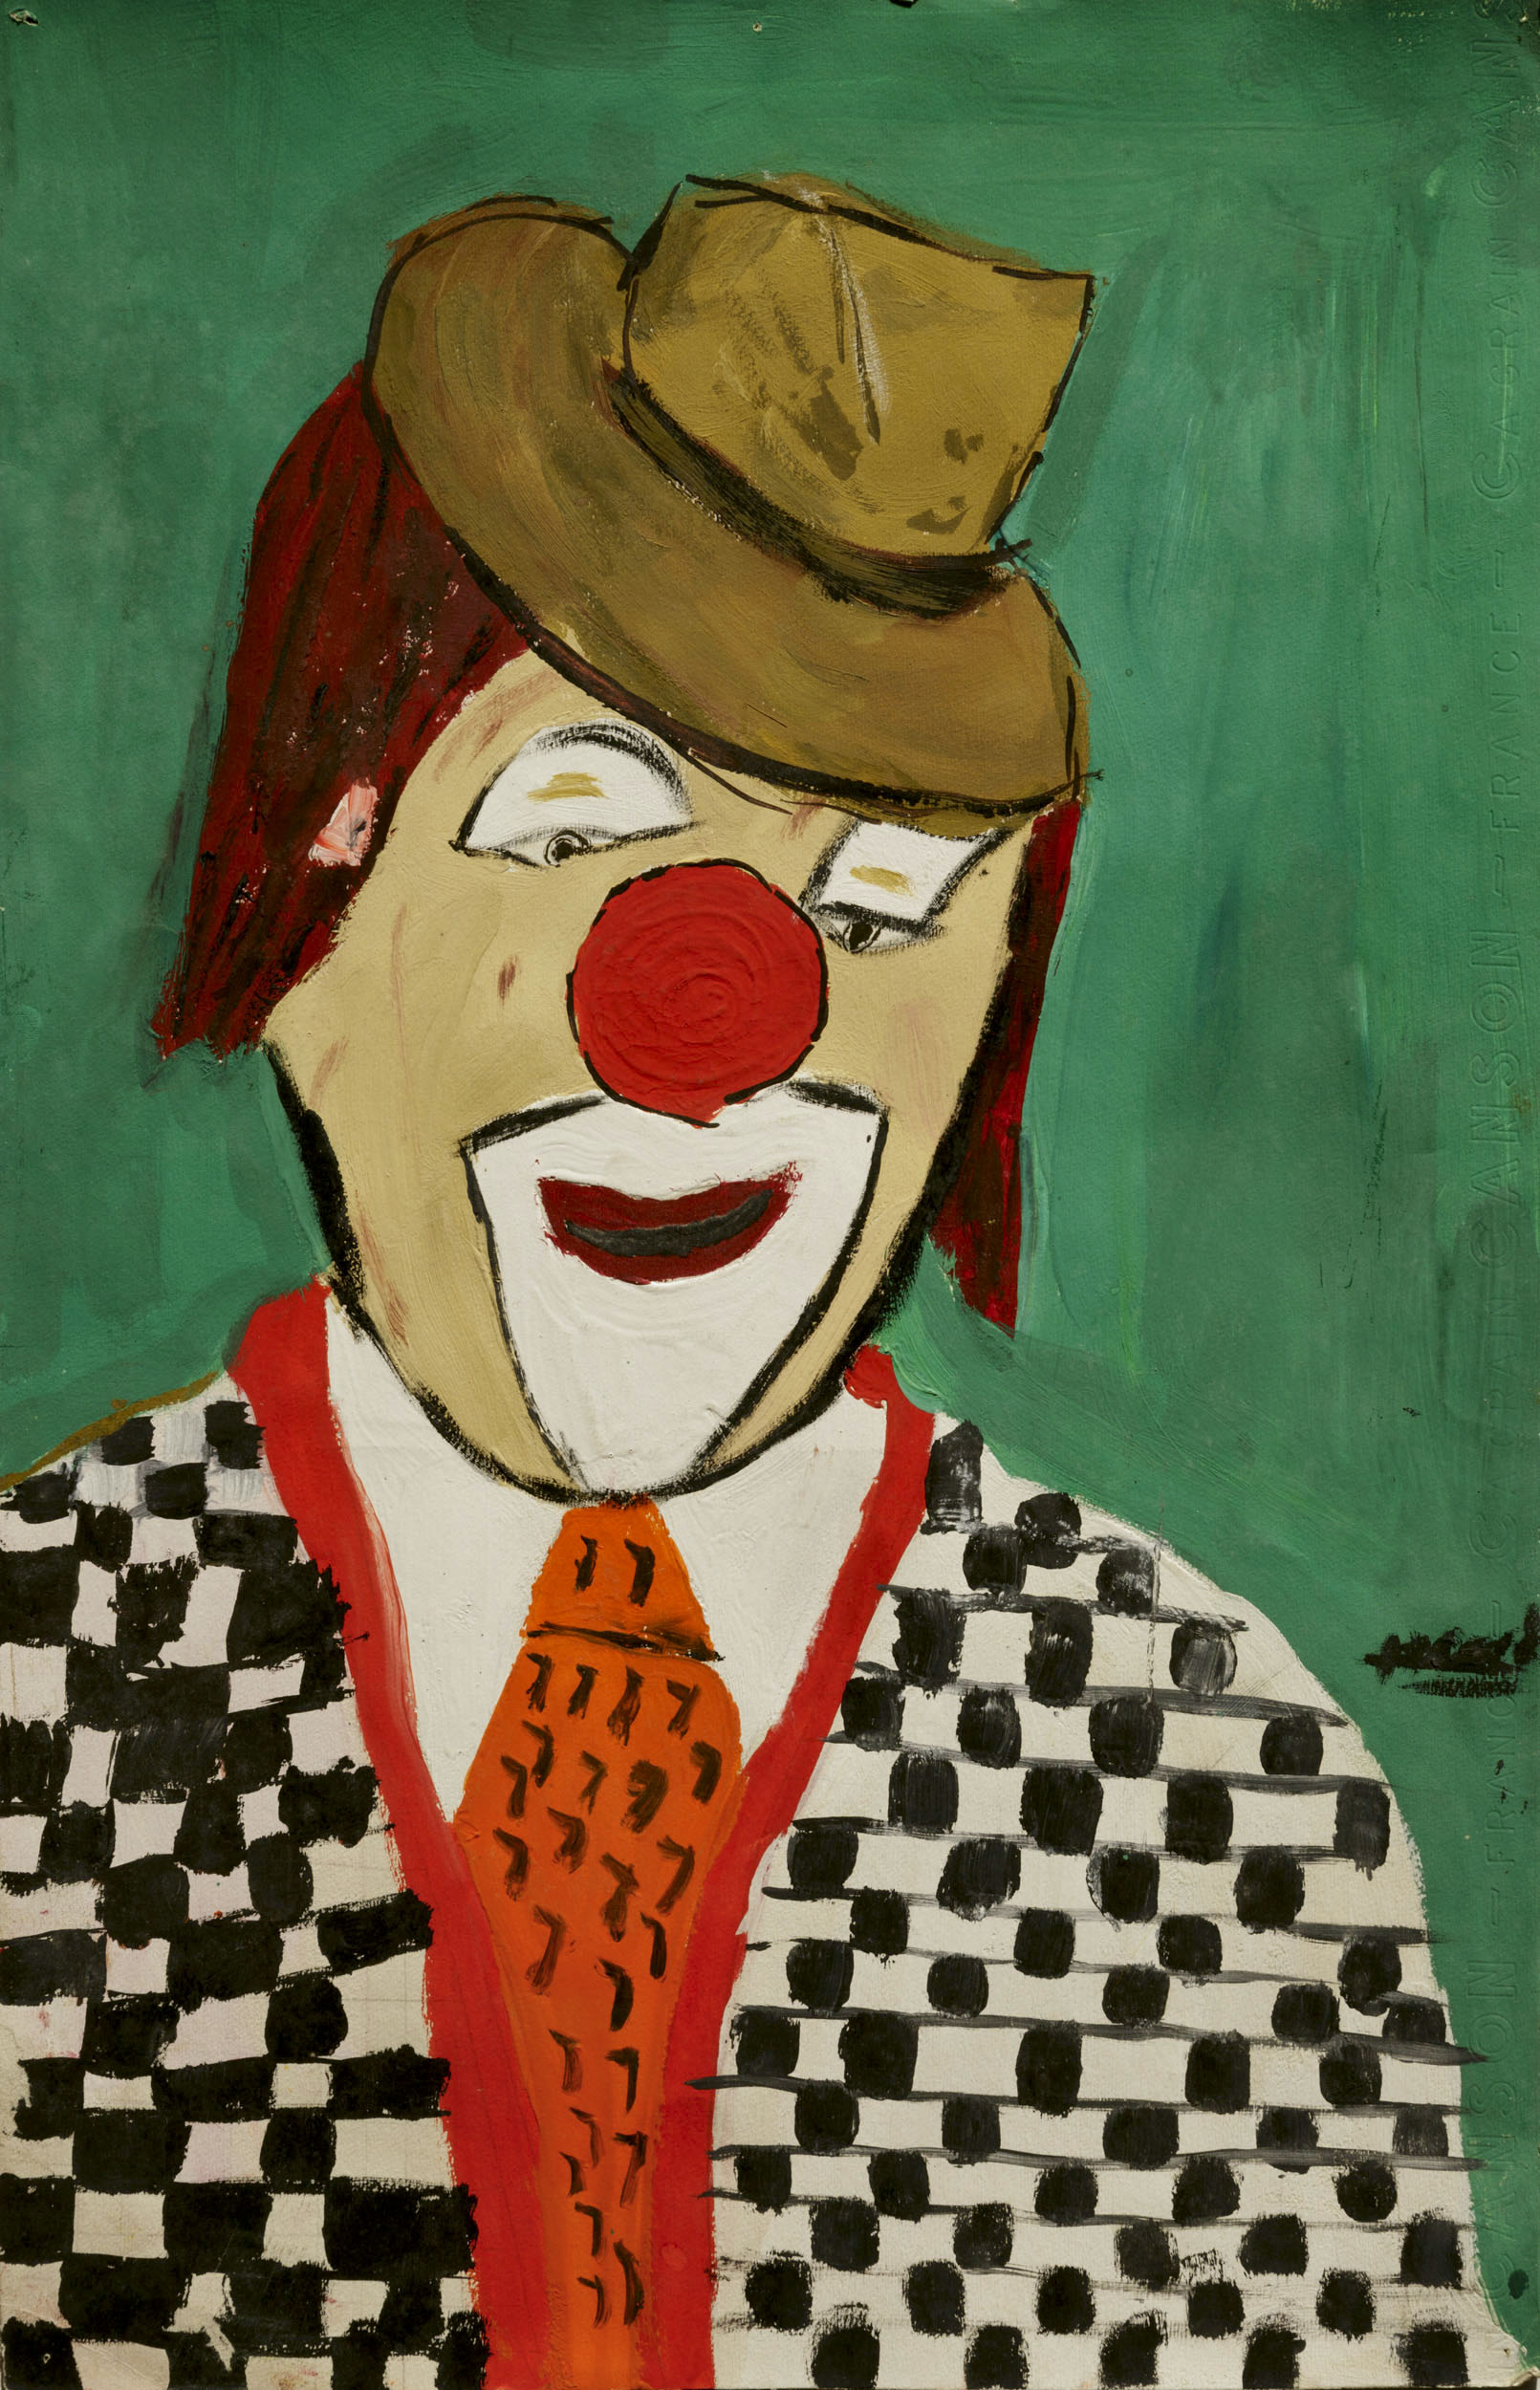 Portrait d'un clown. Peinture à la gouache réalisée sur papier Canson à Paris 1973, j'ai 9 ans.